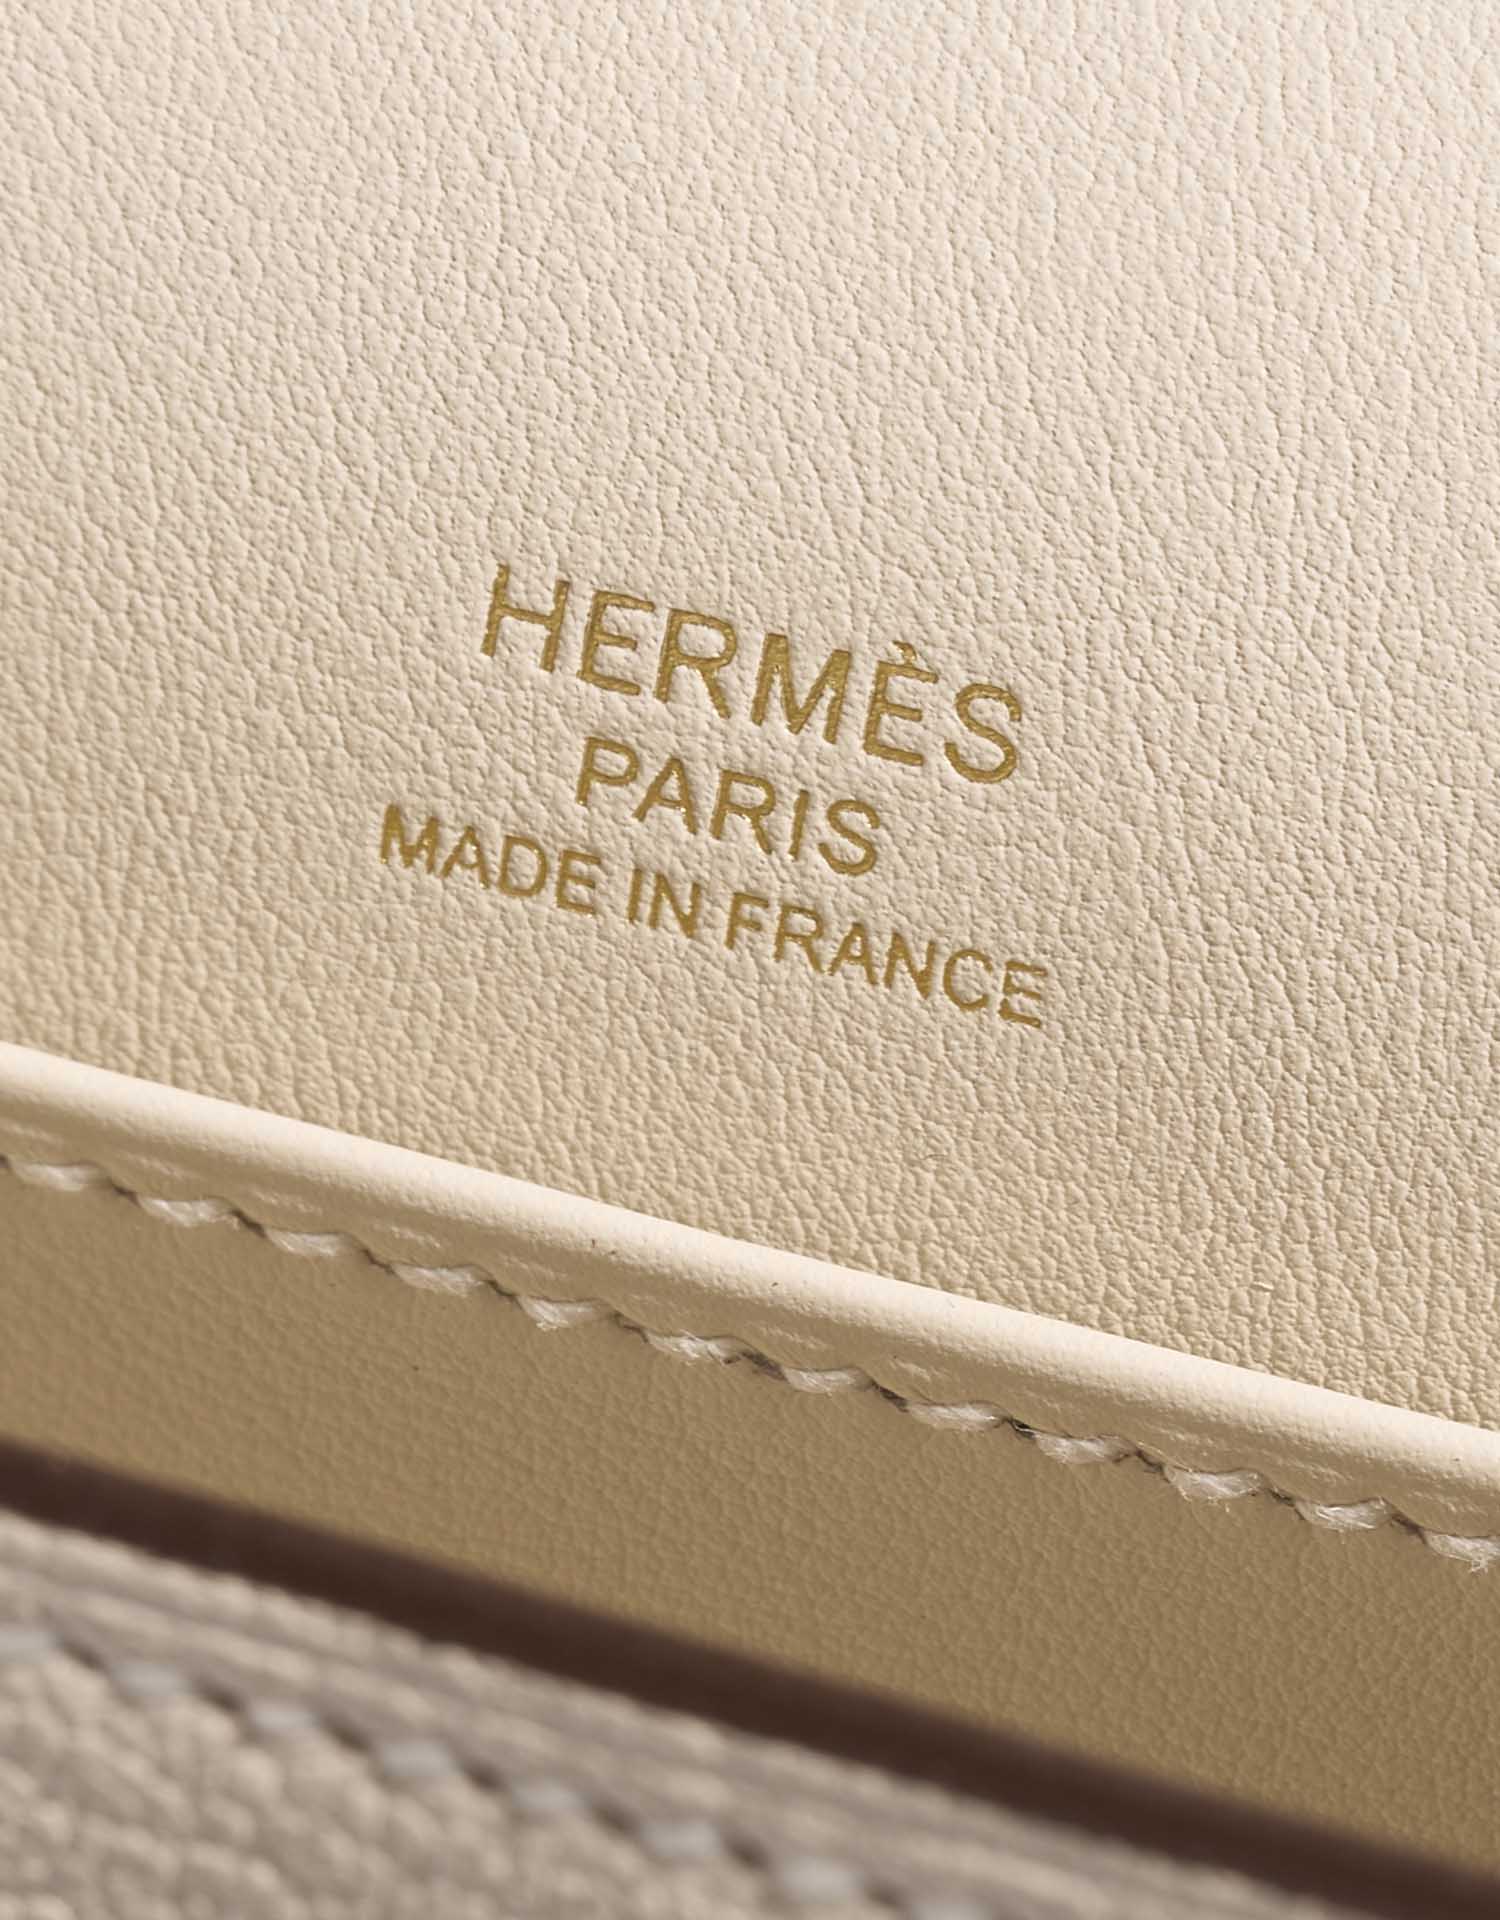 Hermès Geta Nata Logo | Verkaufen Sie Ihre Designertasche auf Saclab.com